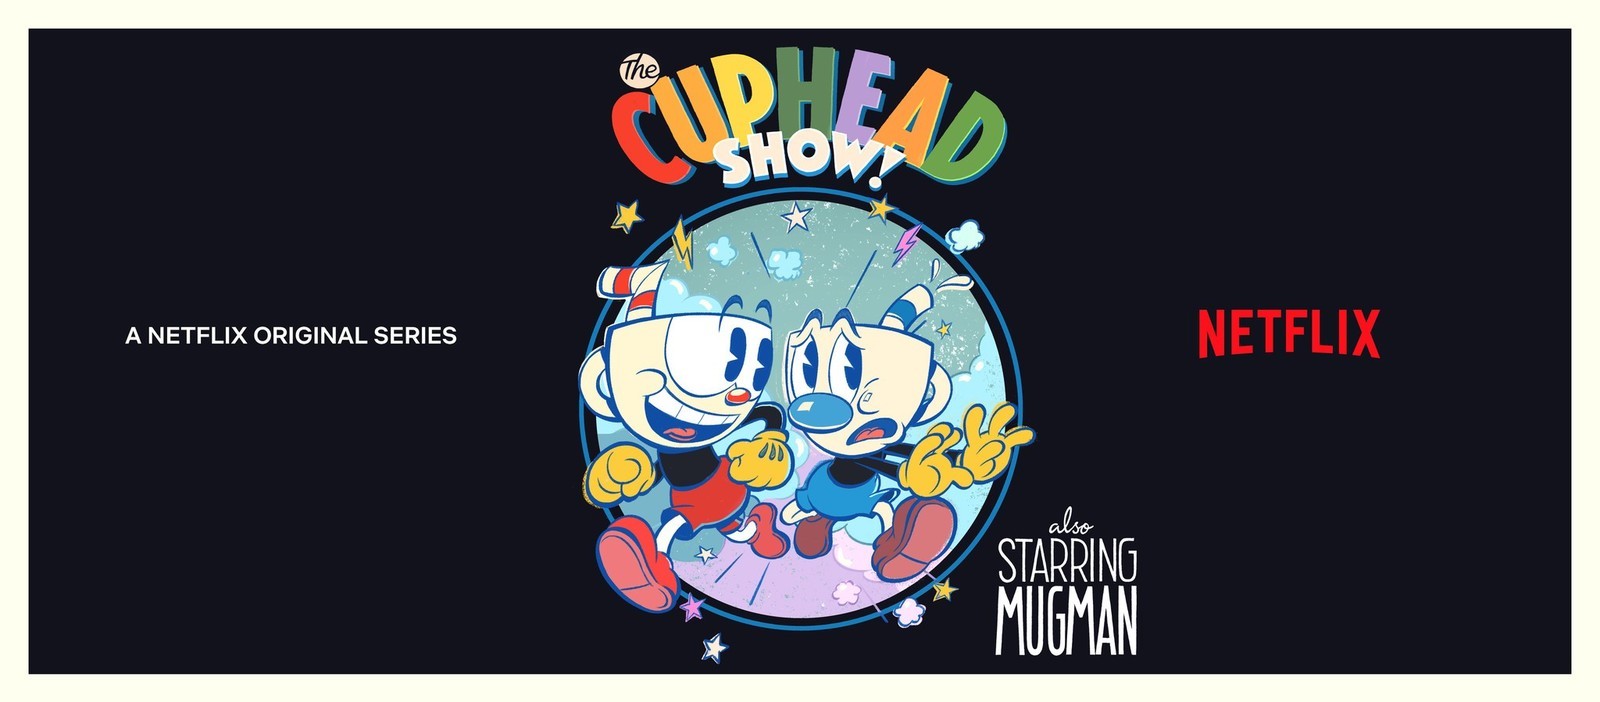 Cuphead が The Cuphead Show としてnetflixでアニメ化 原作に忠実な作風ながらもストーリーはオリジナルなものに Automaton